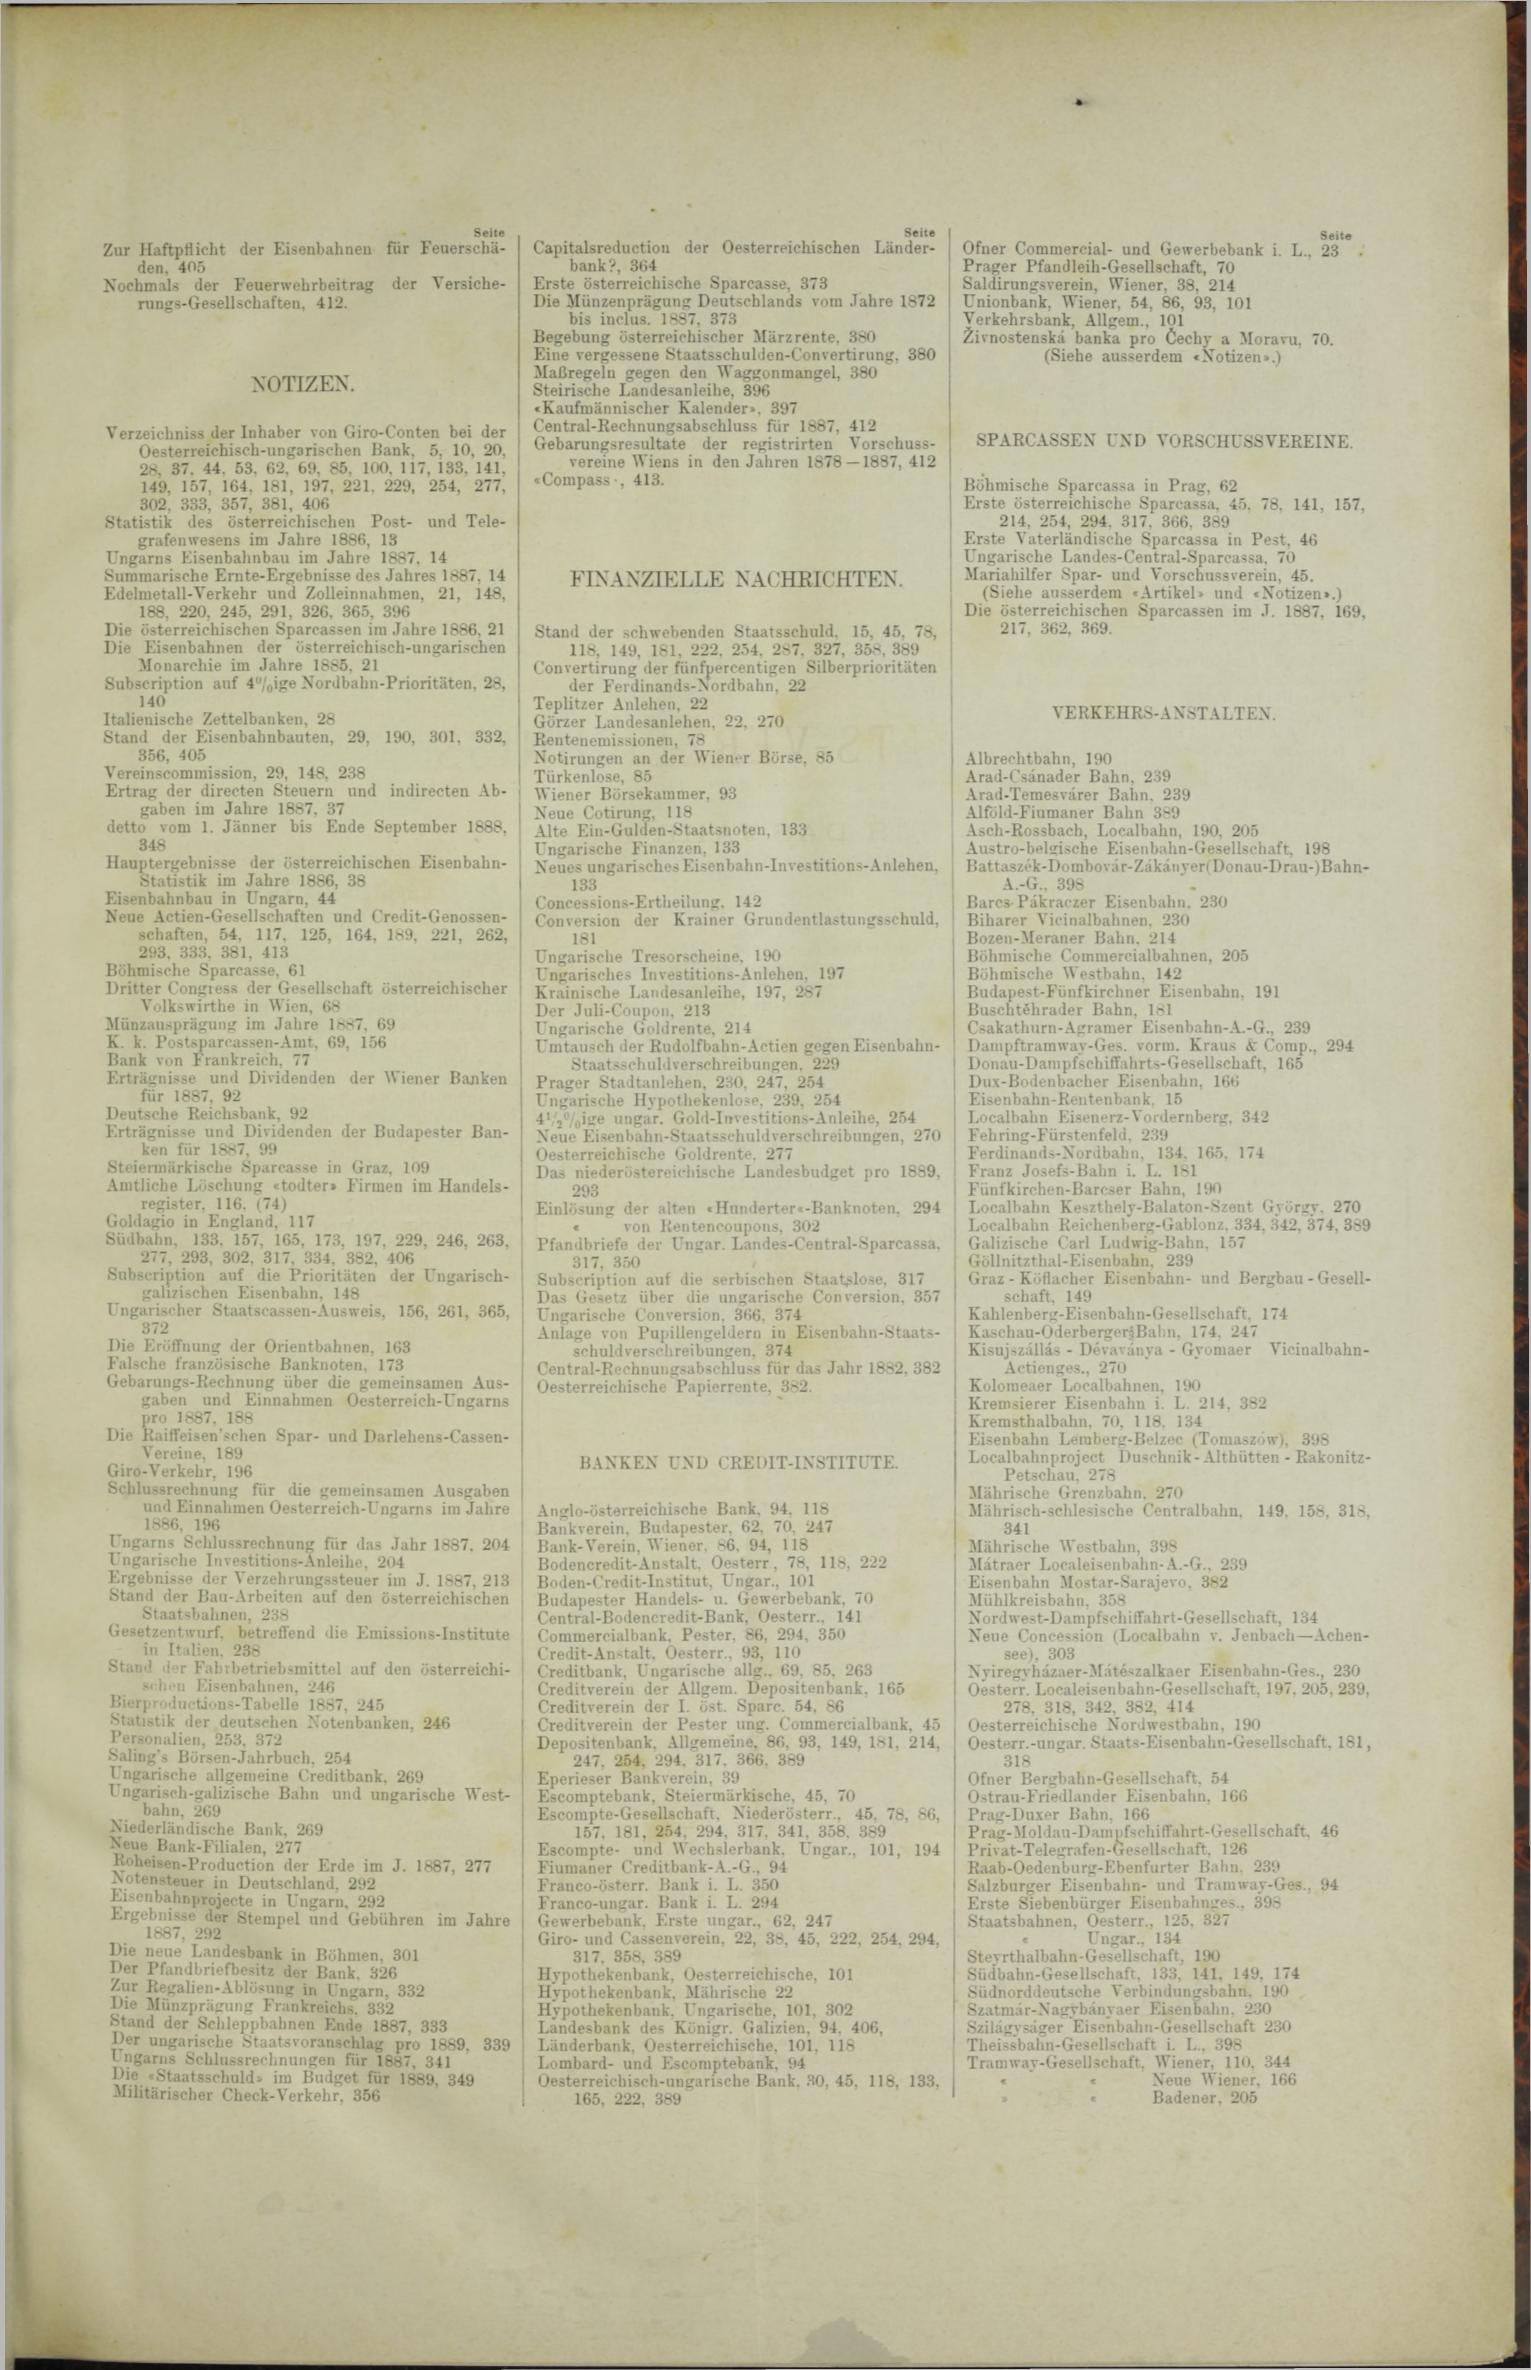 Der Tresor 26.07.1888 - Seite 11